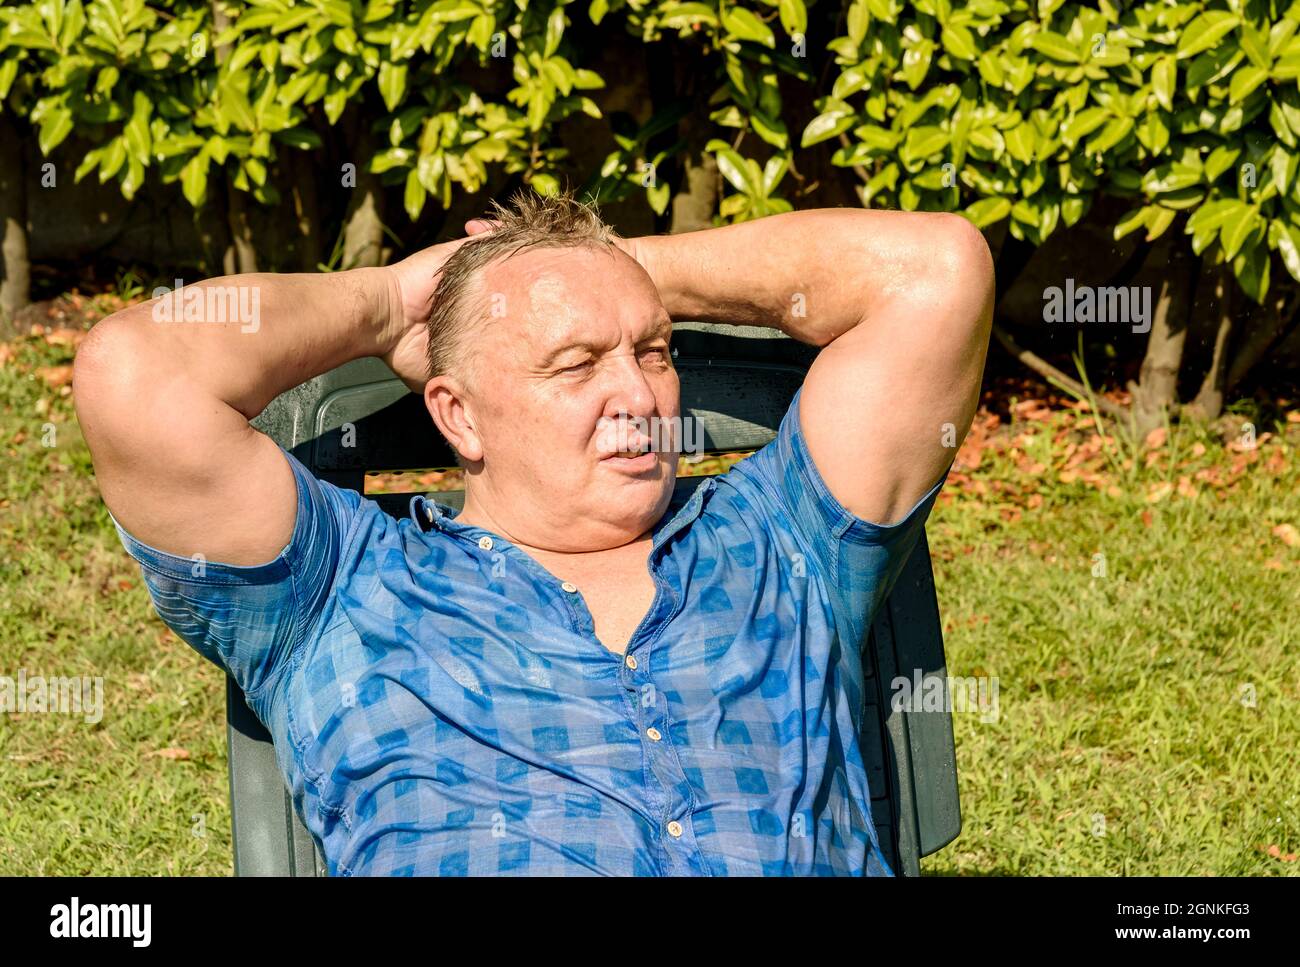 Ritratto di uomo maturo stanco in giardino. Concetto di stile di vita delle persone mature. Foto Stock